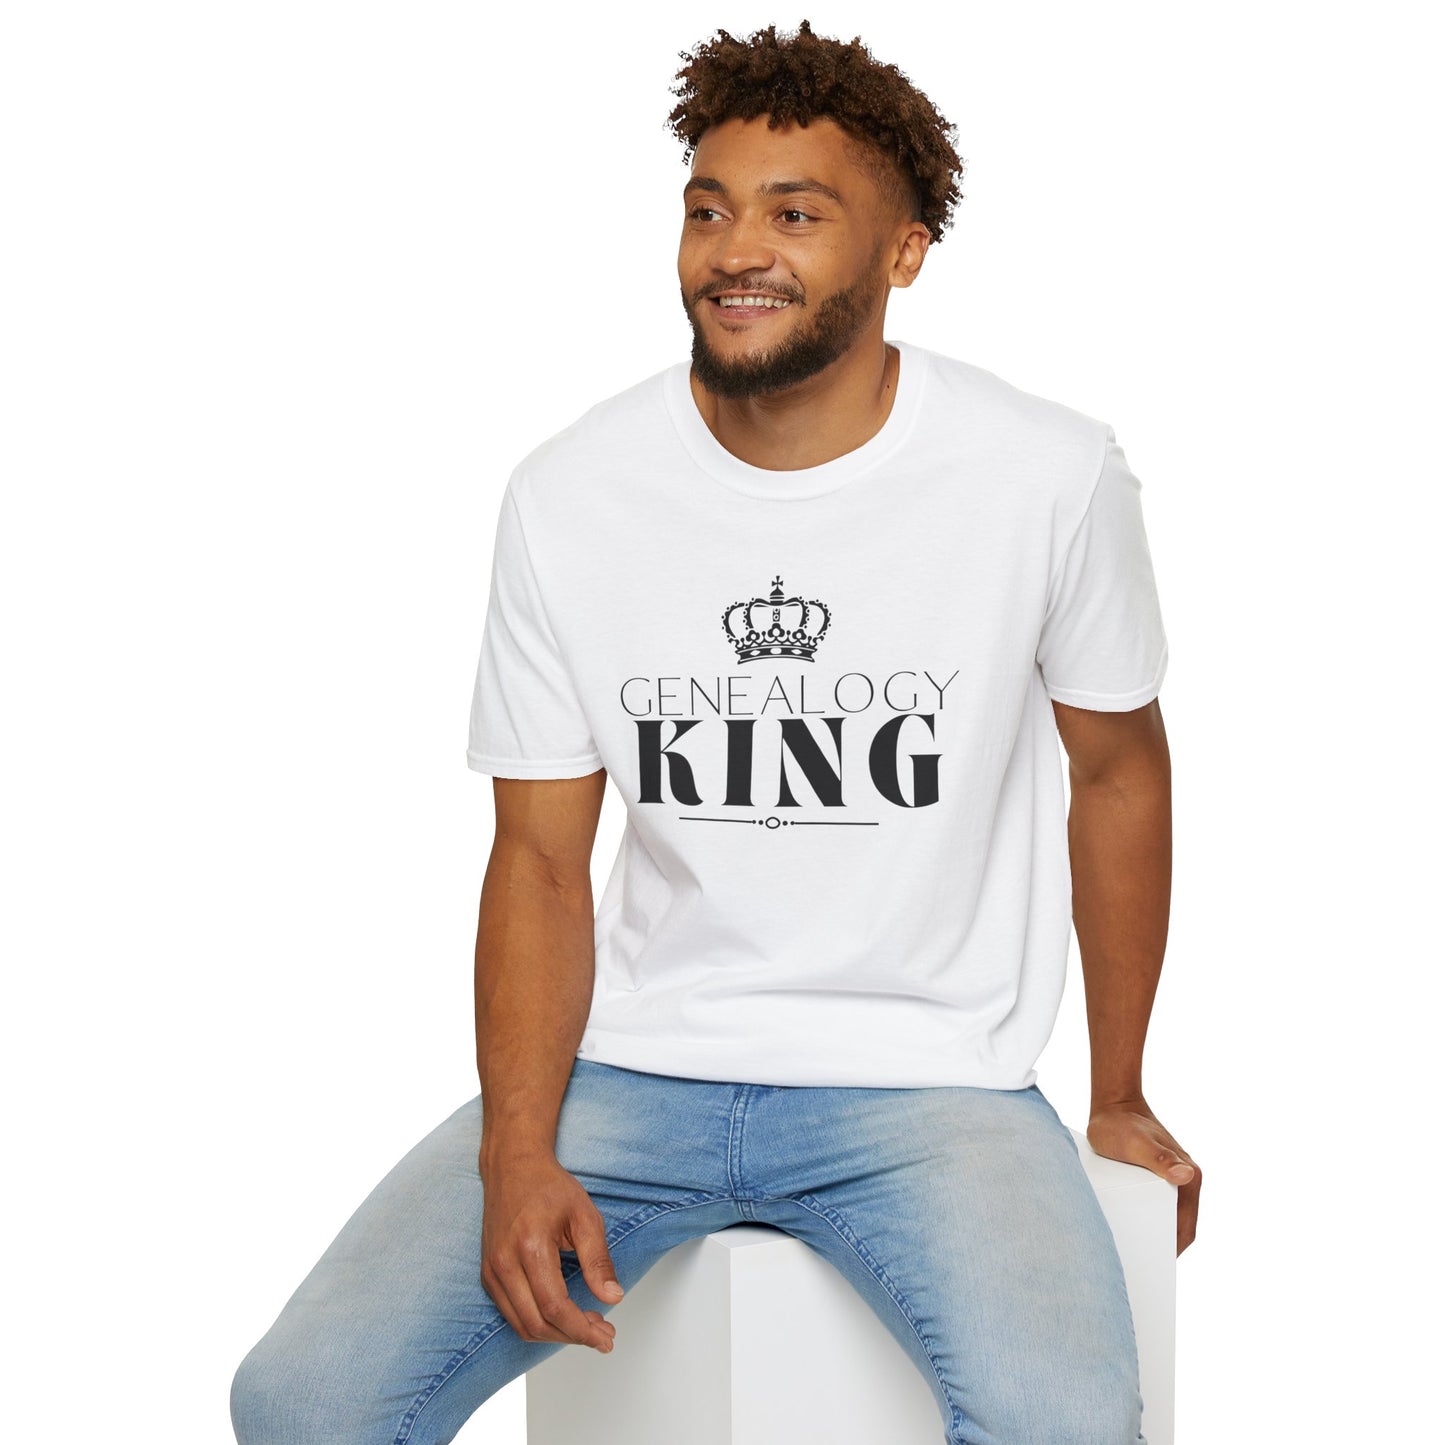 Genealogy King T-Shirt